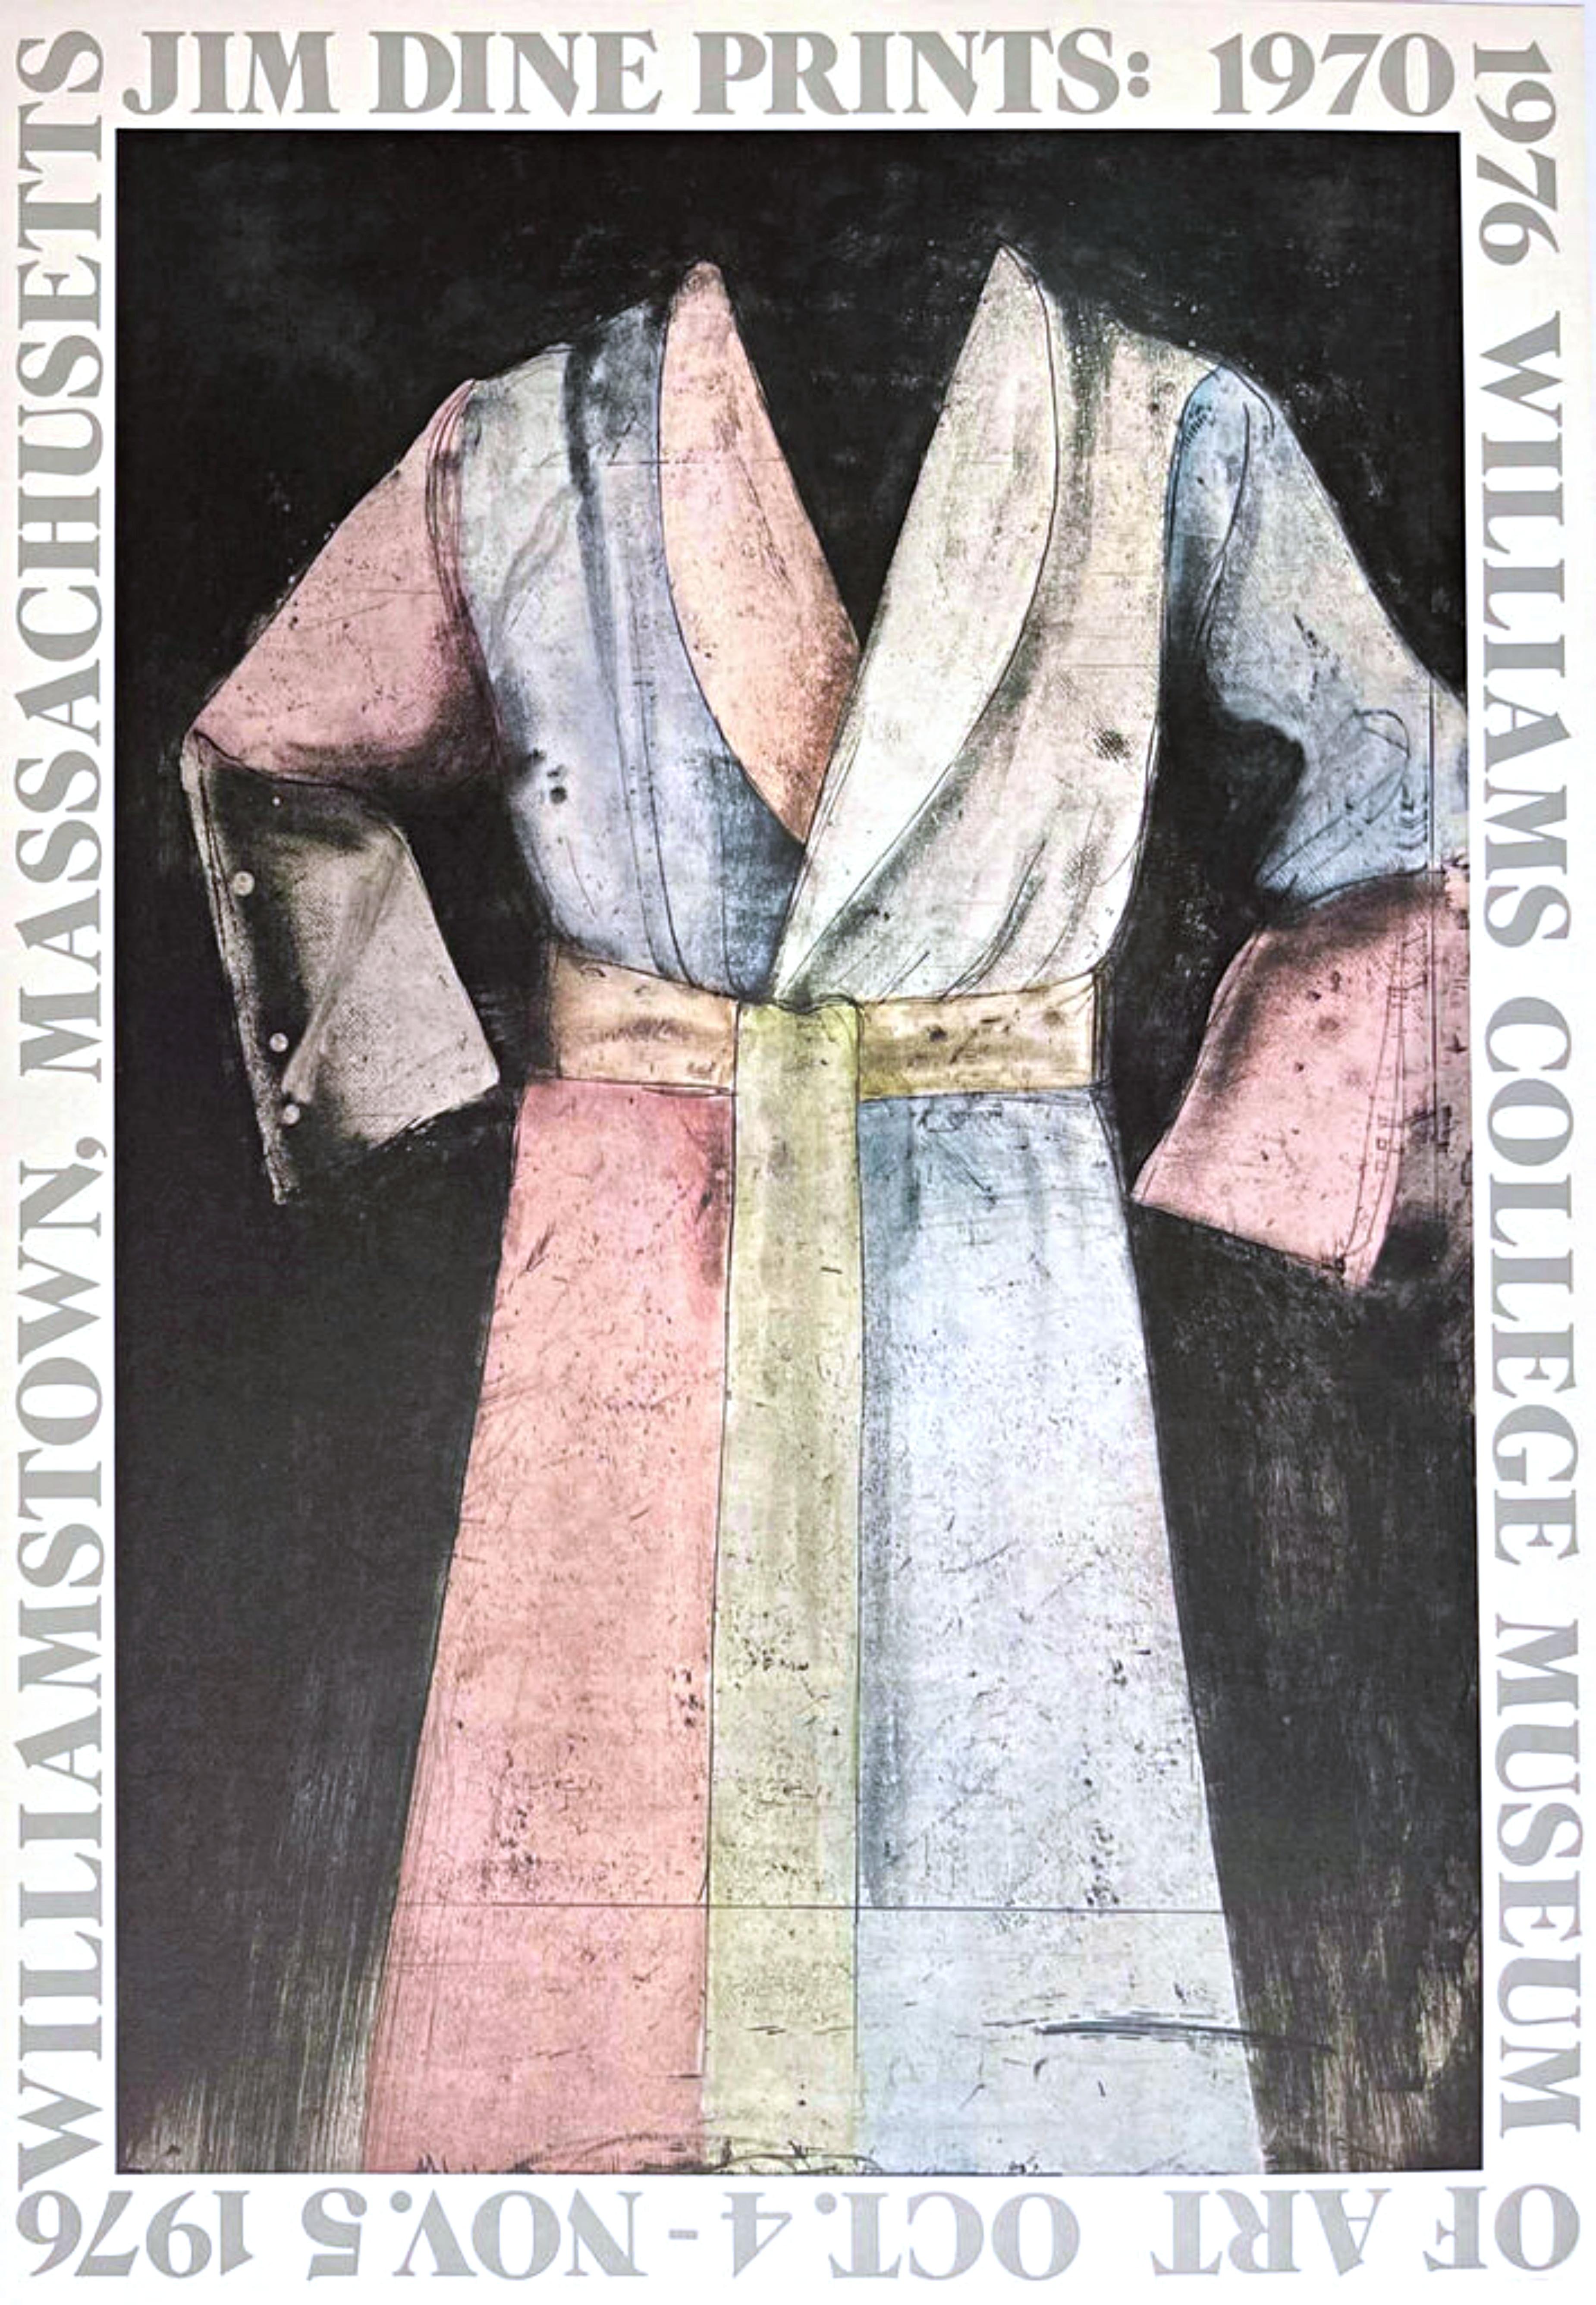 Jim Dine Abstract Print – Limitierte Auflage des Williams College Museums-Ausstellungsplakats auf lithografischem Papier 